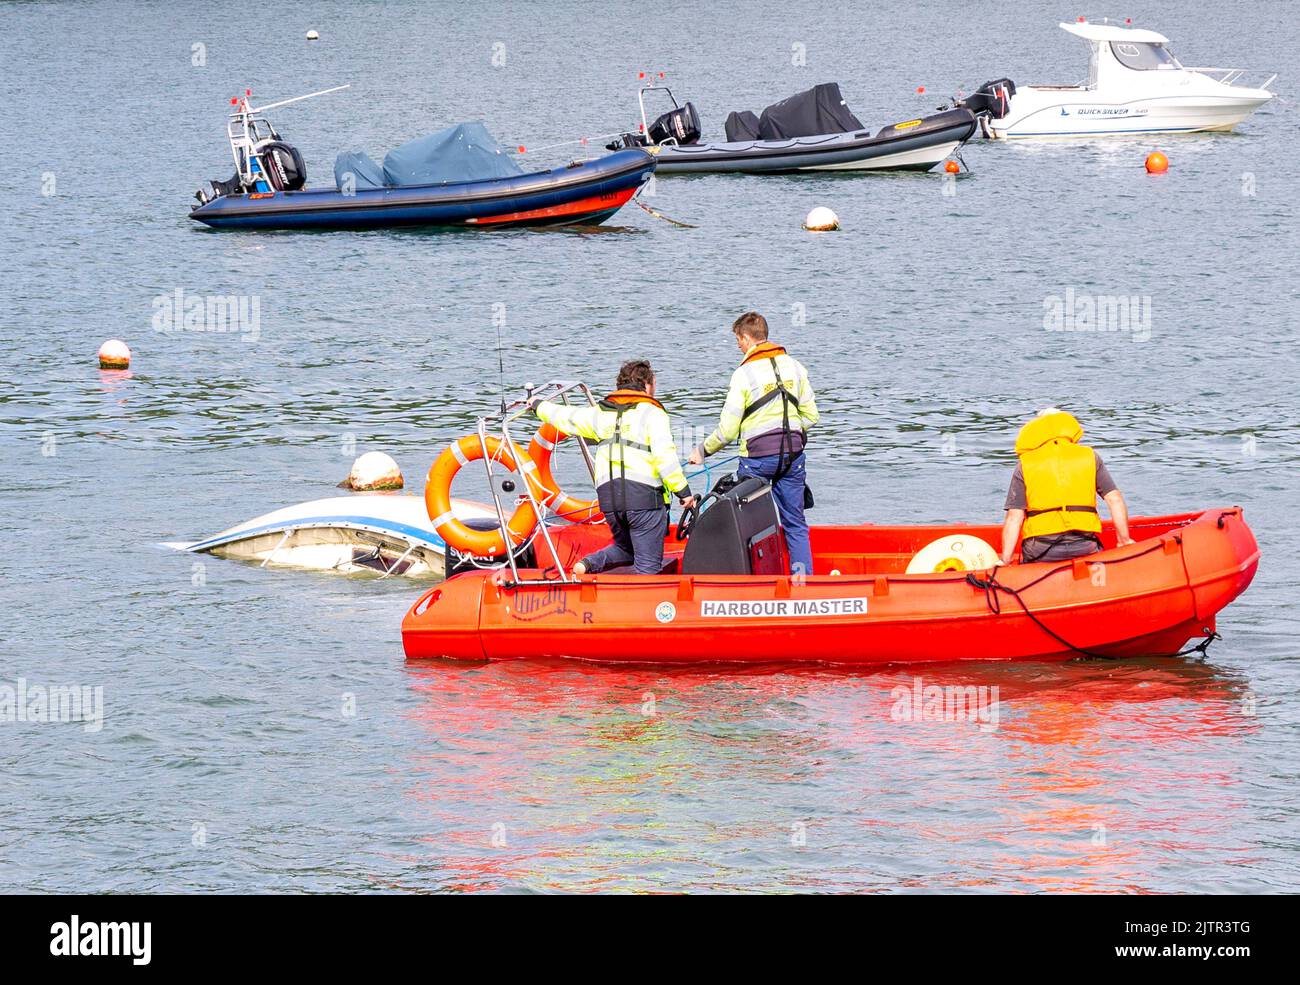 Local Harbour Master quitar yate hundido remolcándolo lejos de amarrar con Waly Boat Foto de stock